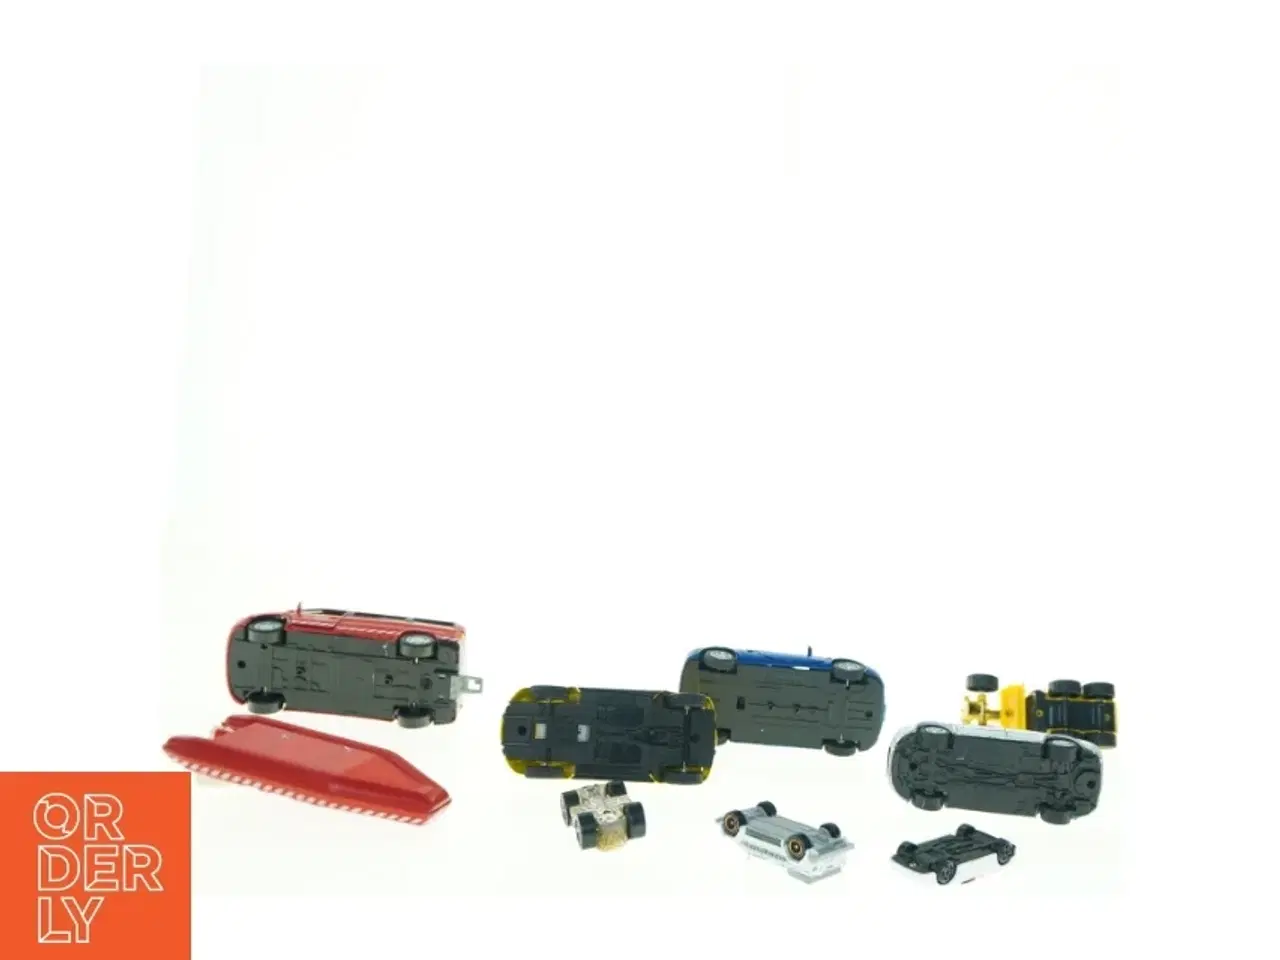 Billede 2 - Samling af diverse legetøjsbiler (str. 13 x 6 cm)